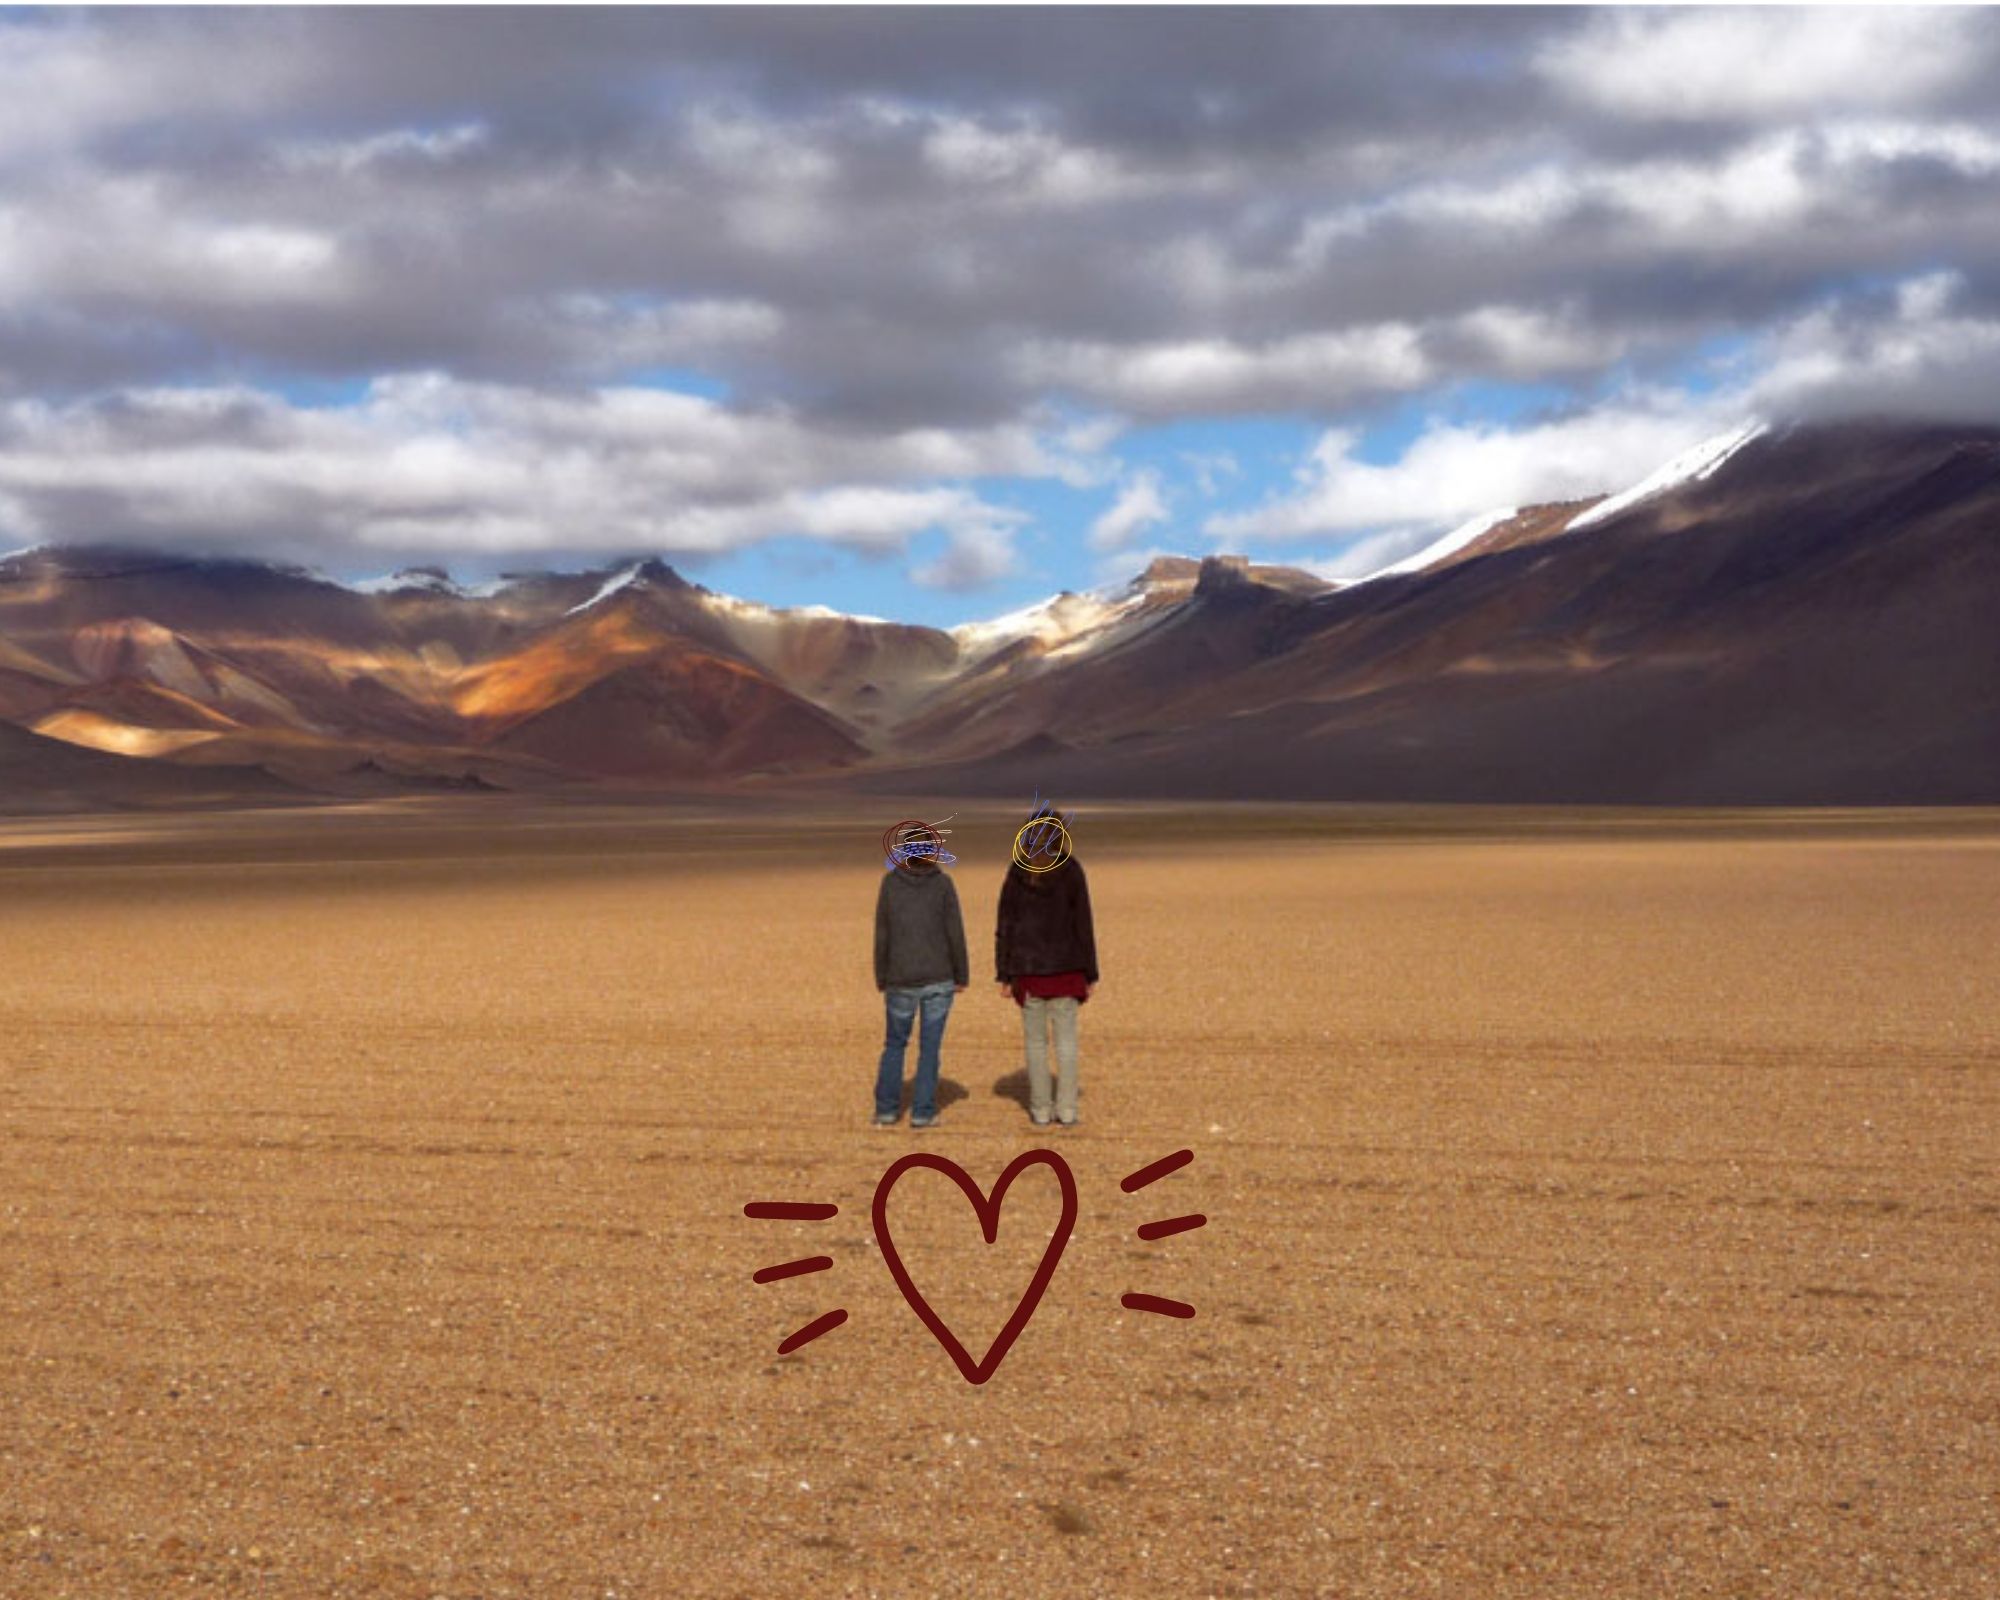 2 Frauen stehen in einer Wüste, im Hintergrund dramatische Berge und oben graue Wolken. Der Himmel zuhinters in Blau. Die beiden Frauen blicken in die Ferne.